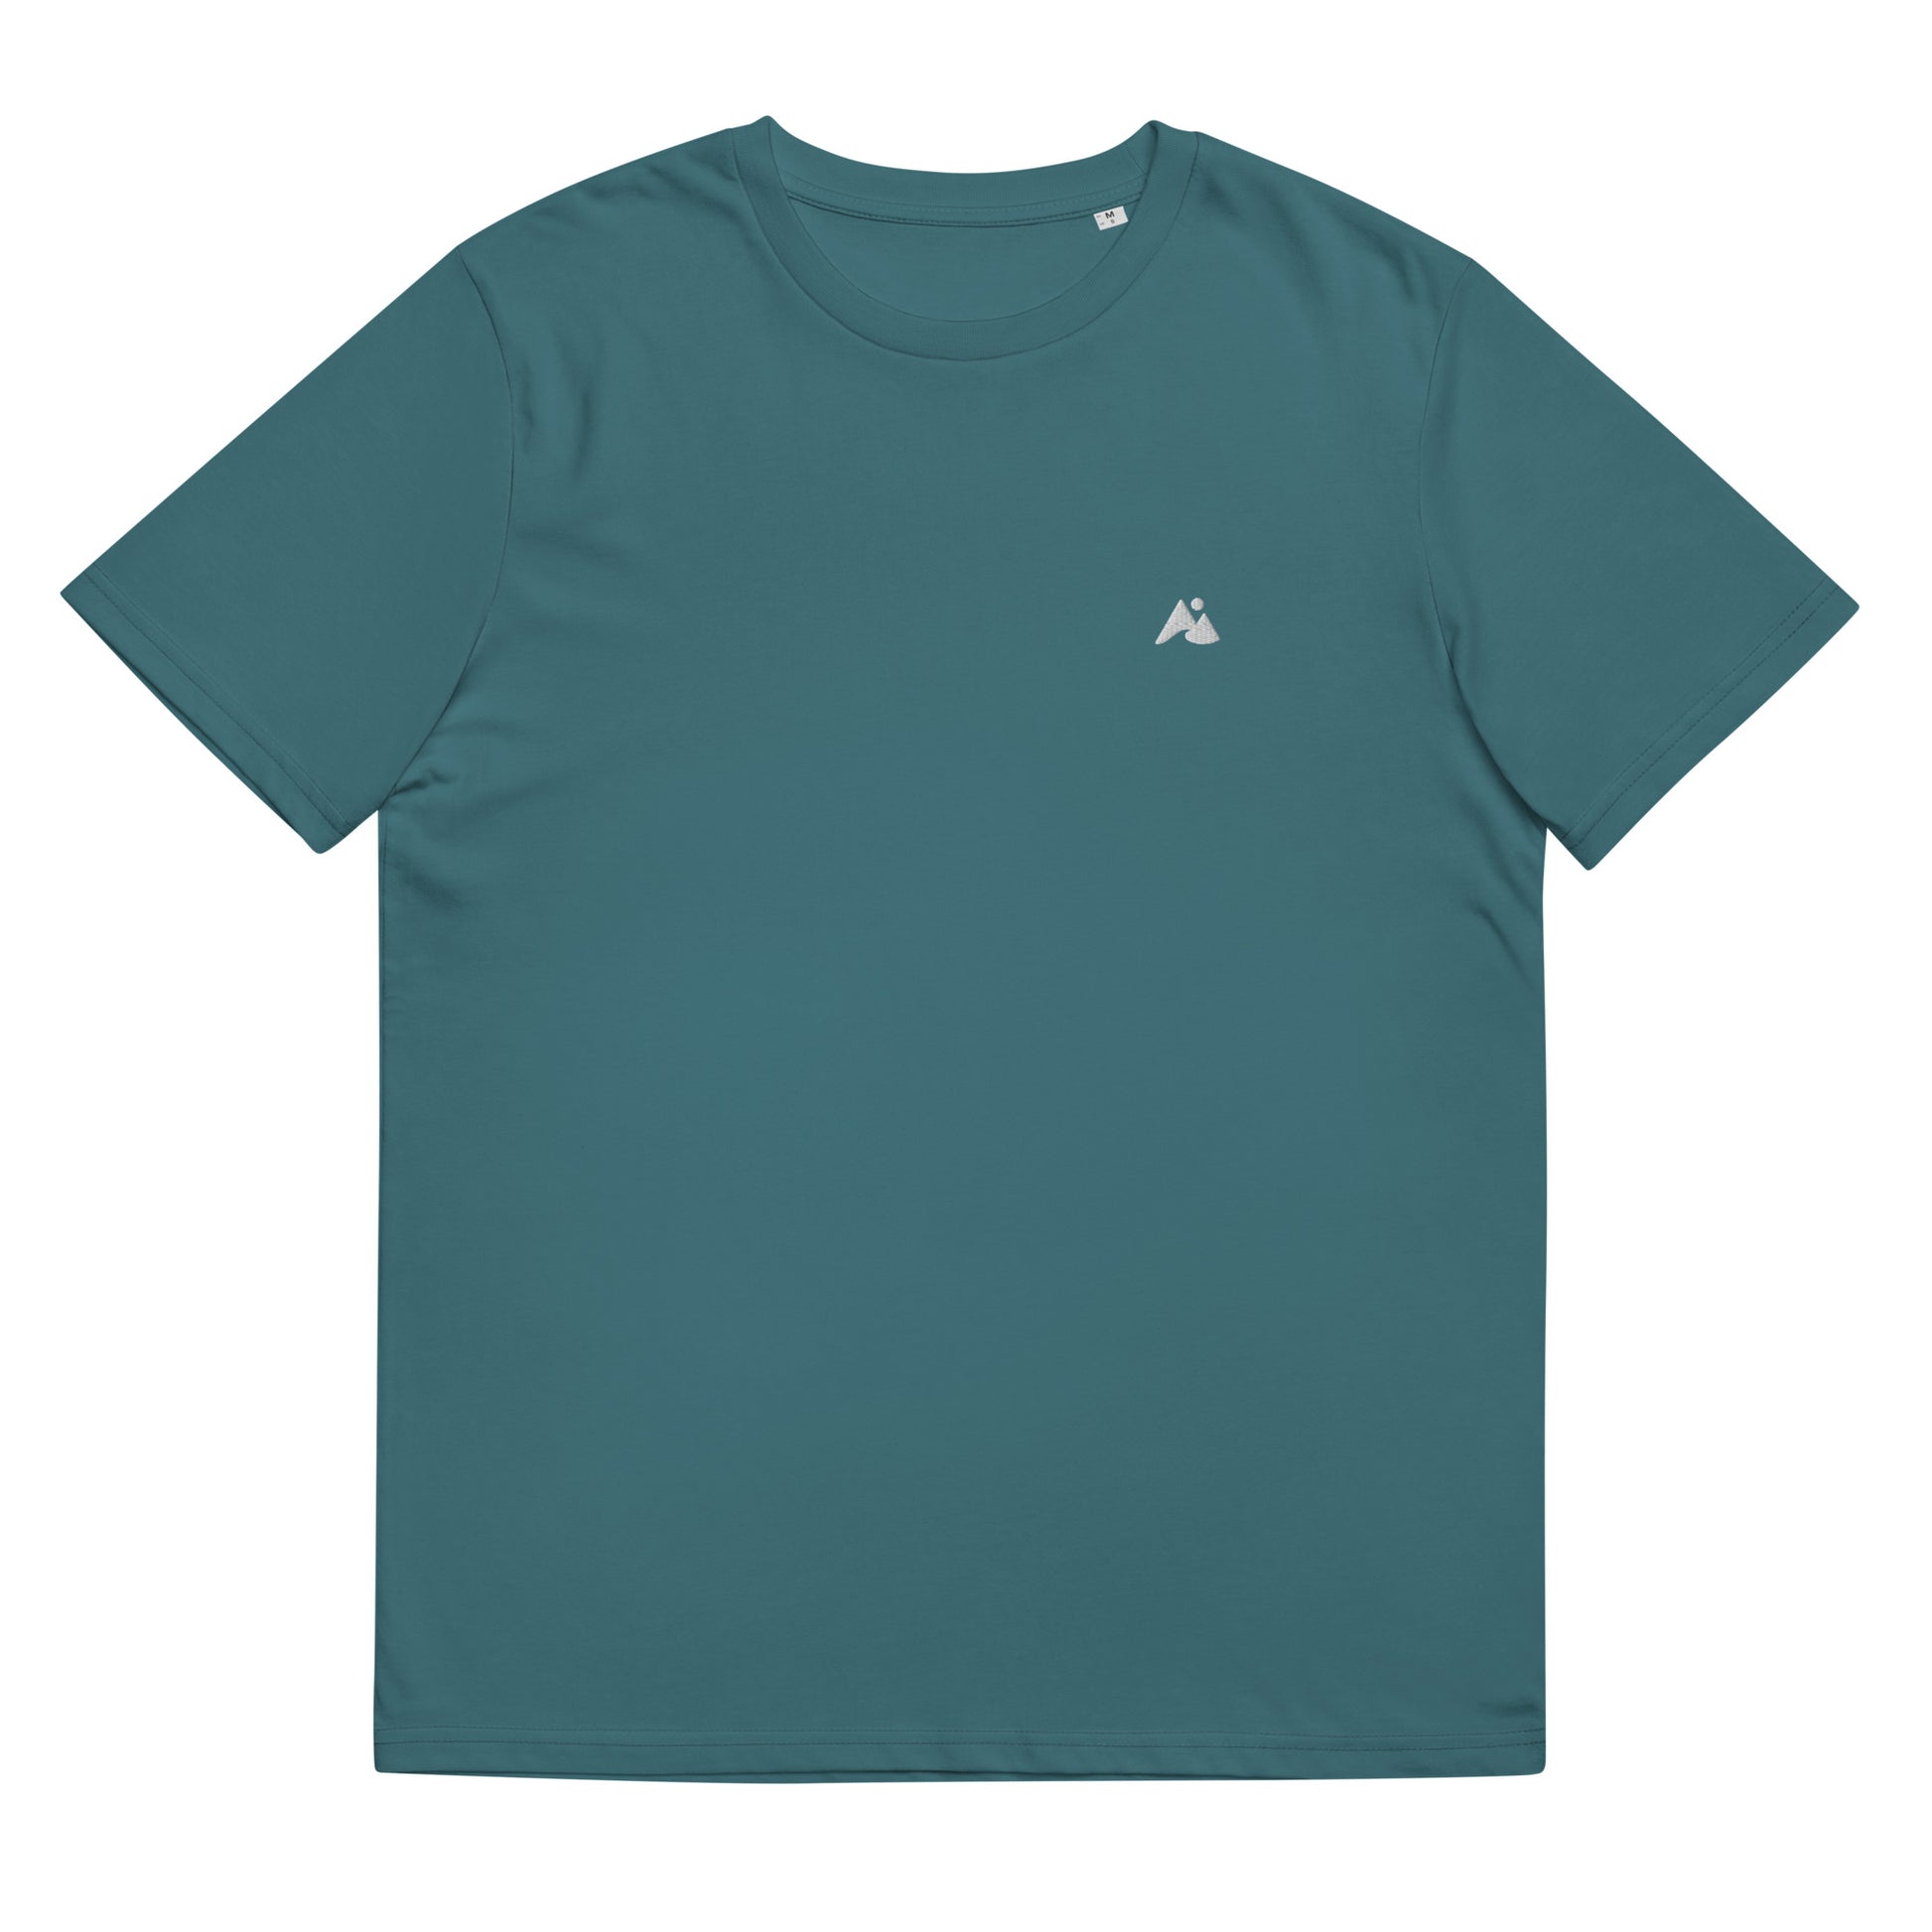 Il s'agit d'une image d'un t-shirt unisexe de couleur bleu canard. Le t-shirt est présenté sur un fond blanc. Il y a un petit logo montagne et vague blanc sur la poitrine côté cœur.